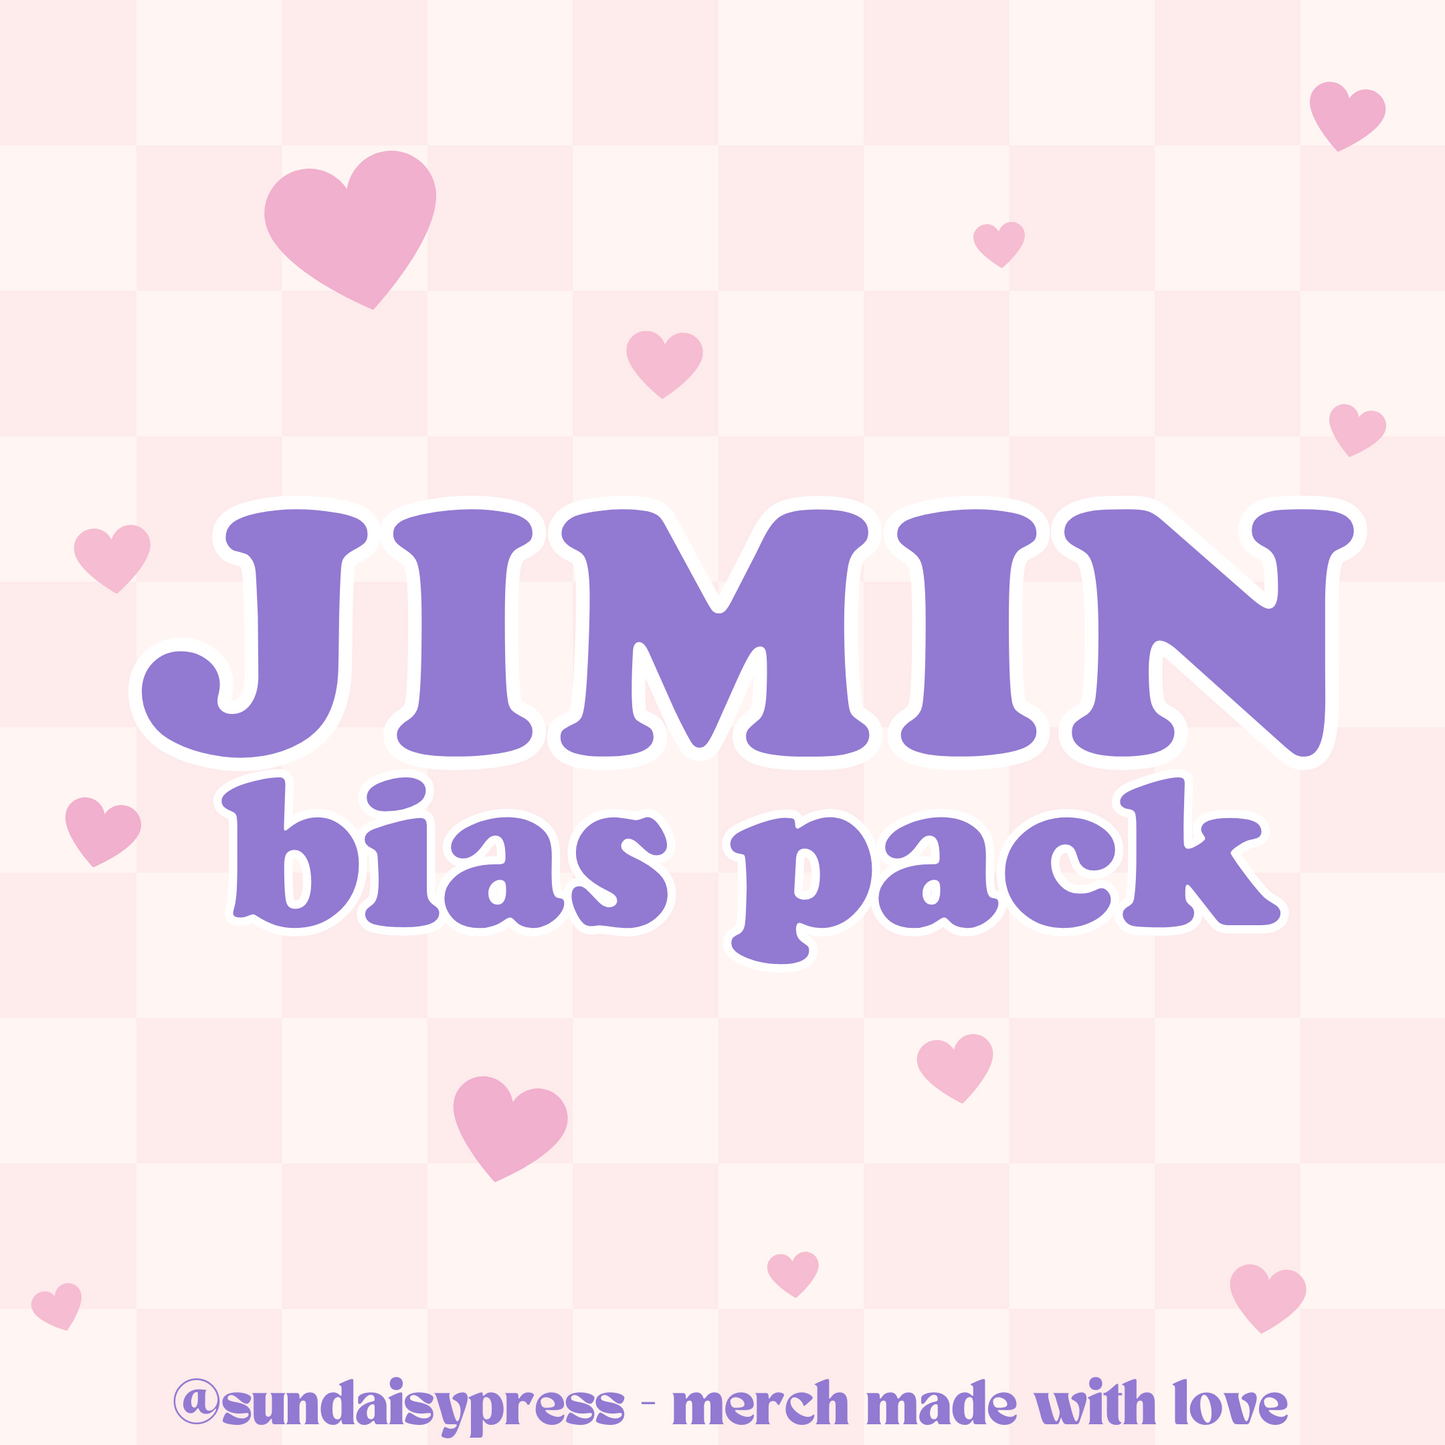 Jimin bias pack